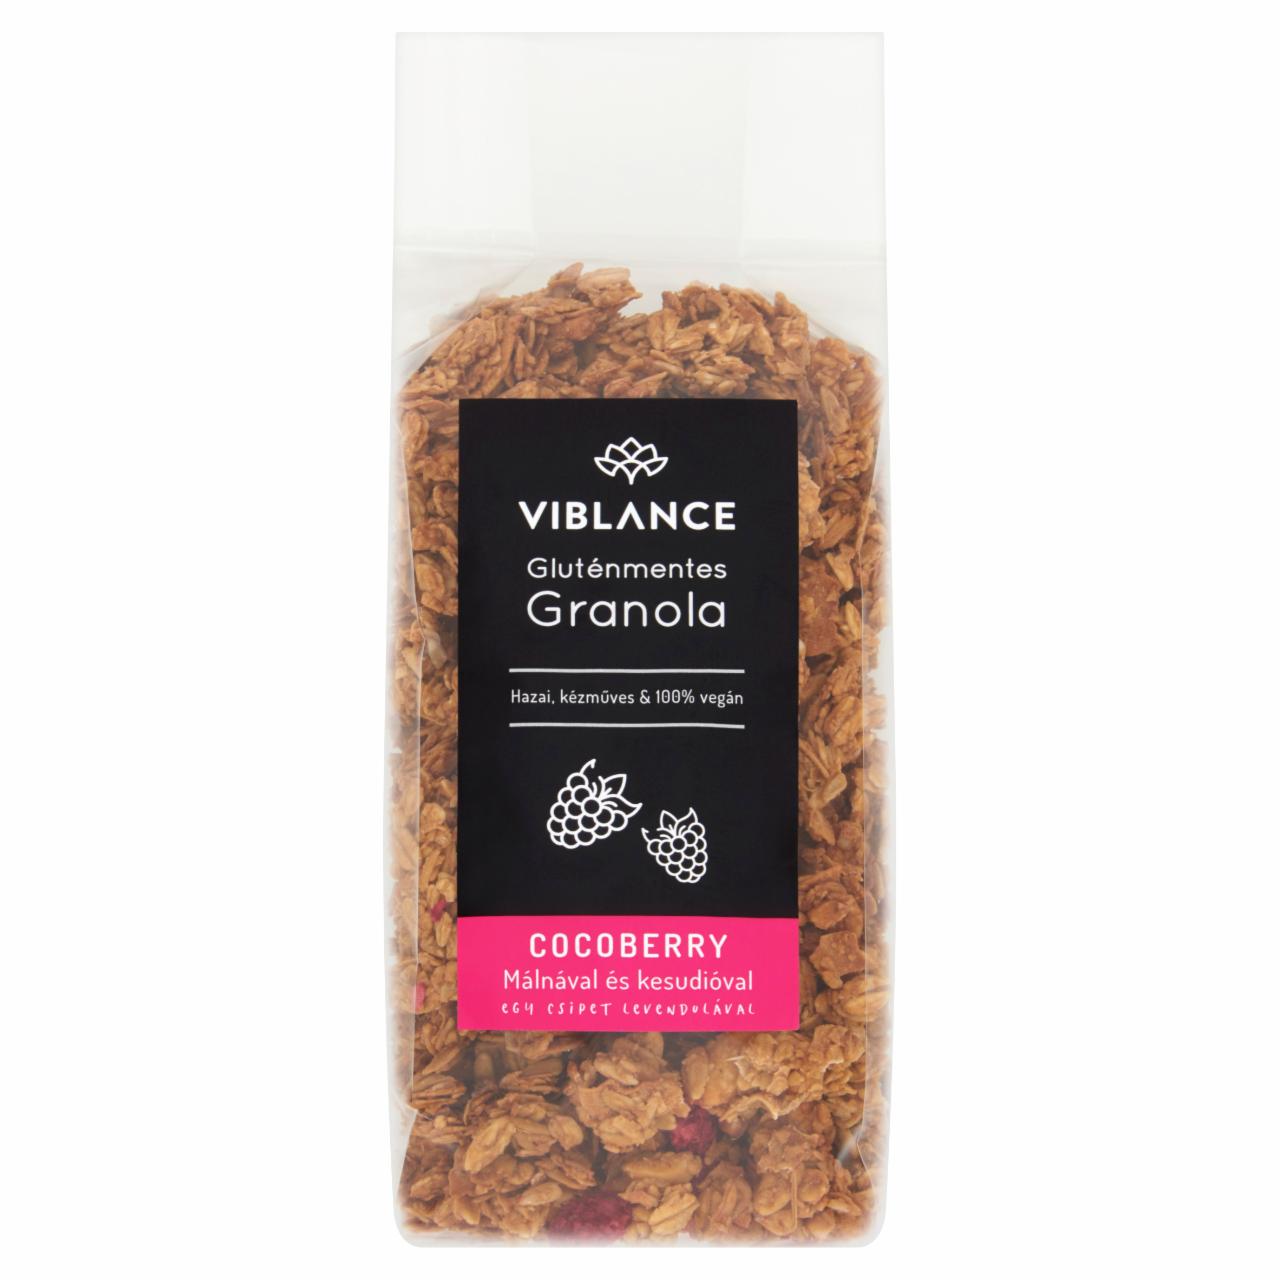 Képek - Viblance Cocoberry gluténmentes granola málnával és kesudióval, egy csipet levendulával 250 g